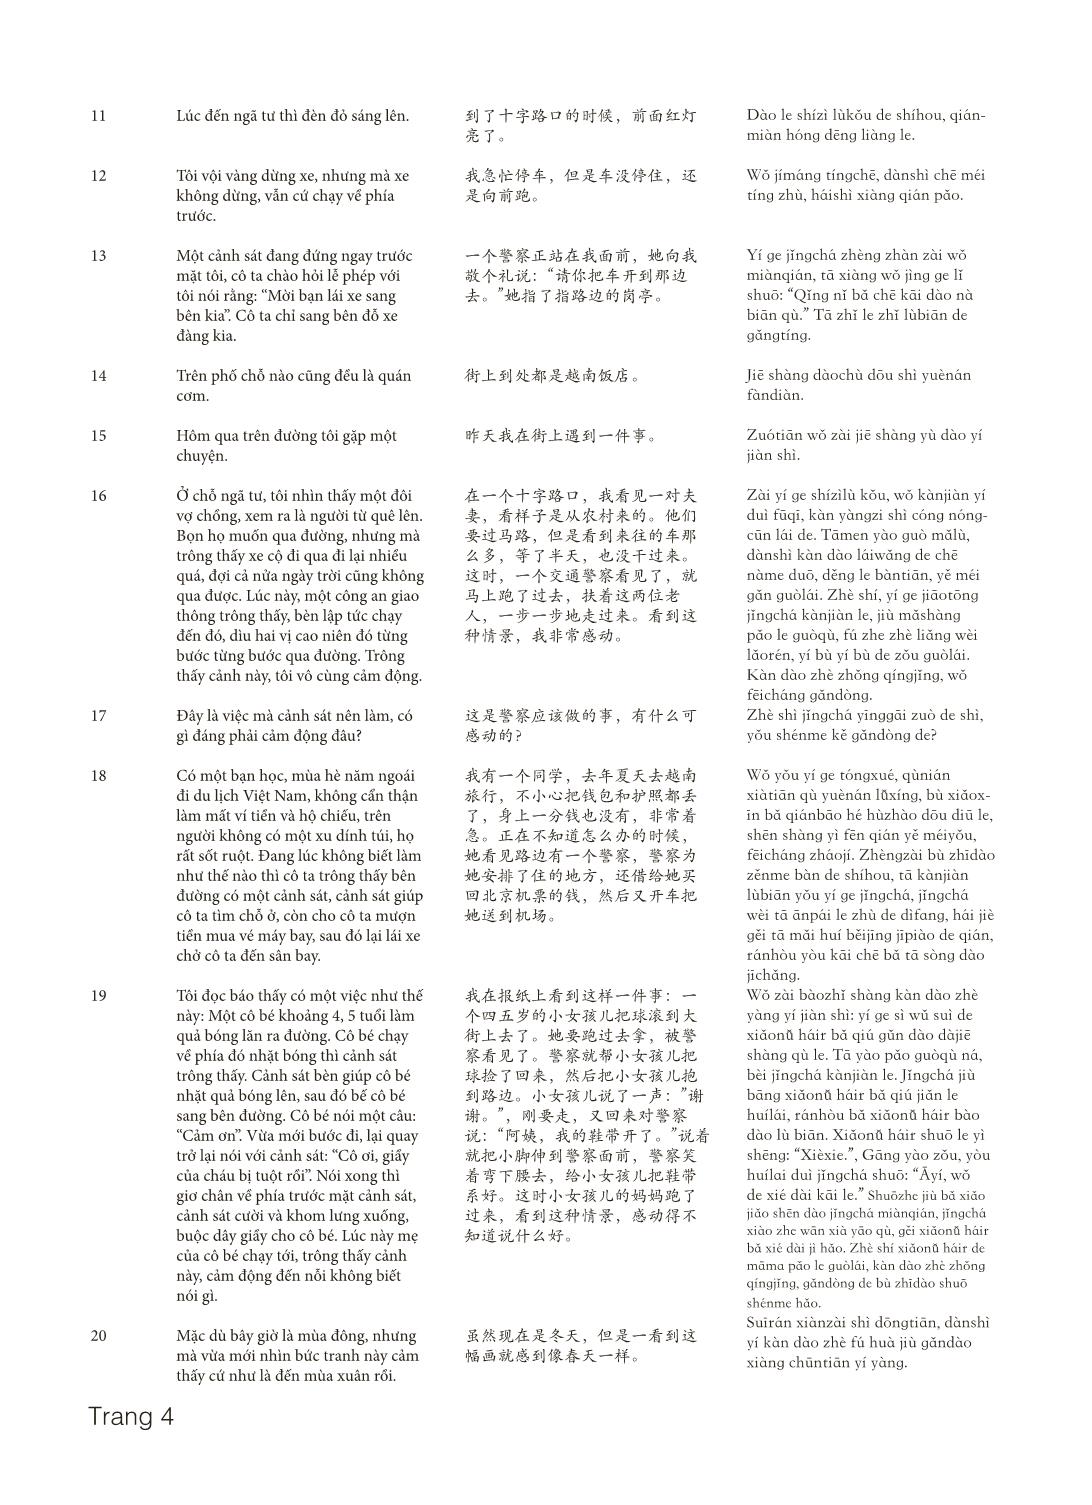 3000 Câu đàm thoại tiếng Hoa - Phần 29 trang 4